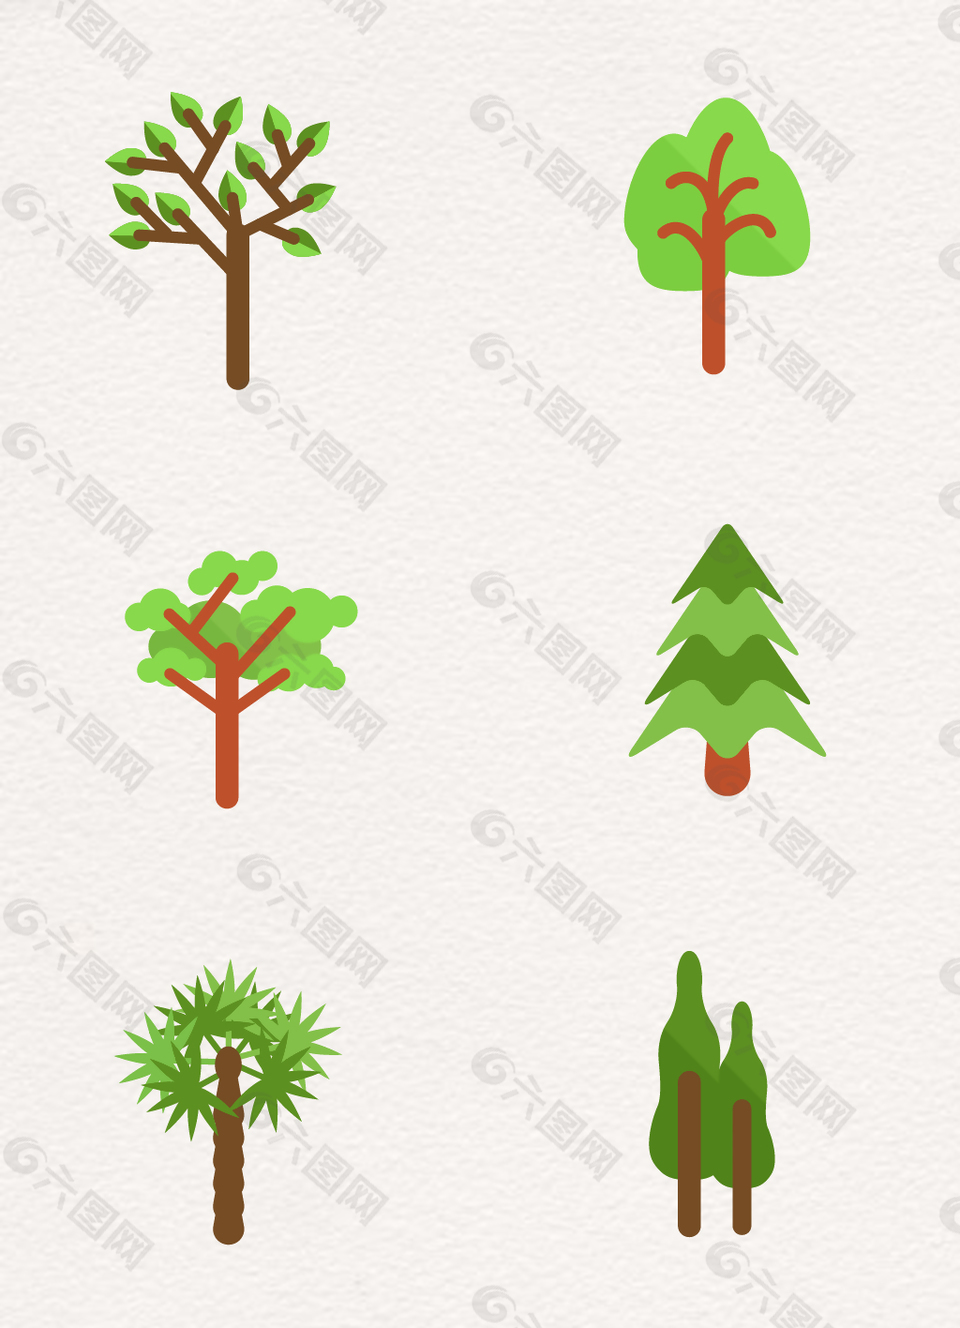 扁平化创意植物卡通树木合集